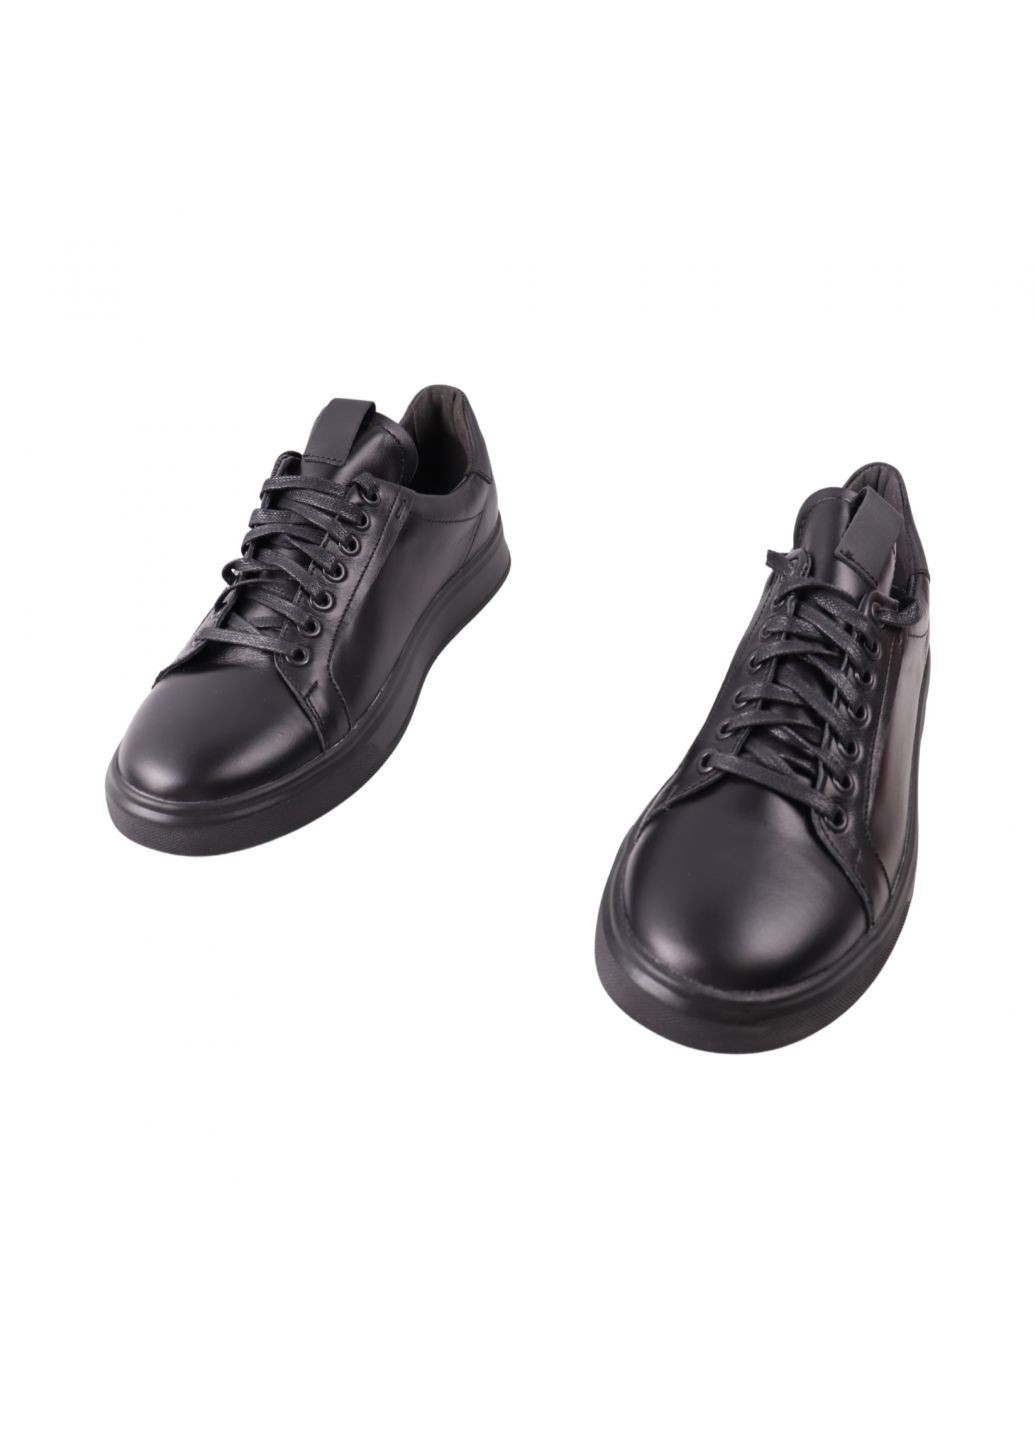 Черные кеды мужские черные натуральная кожа Maxus Shoes 137-23DTC